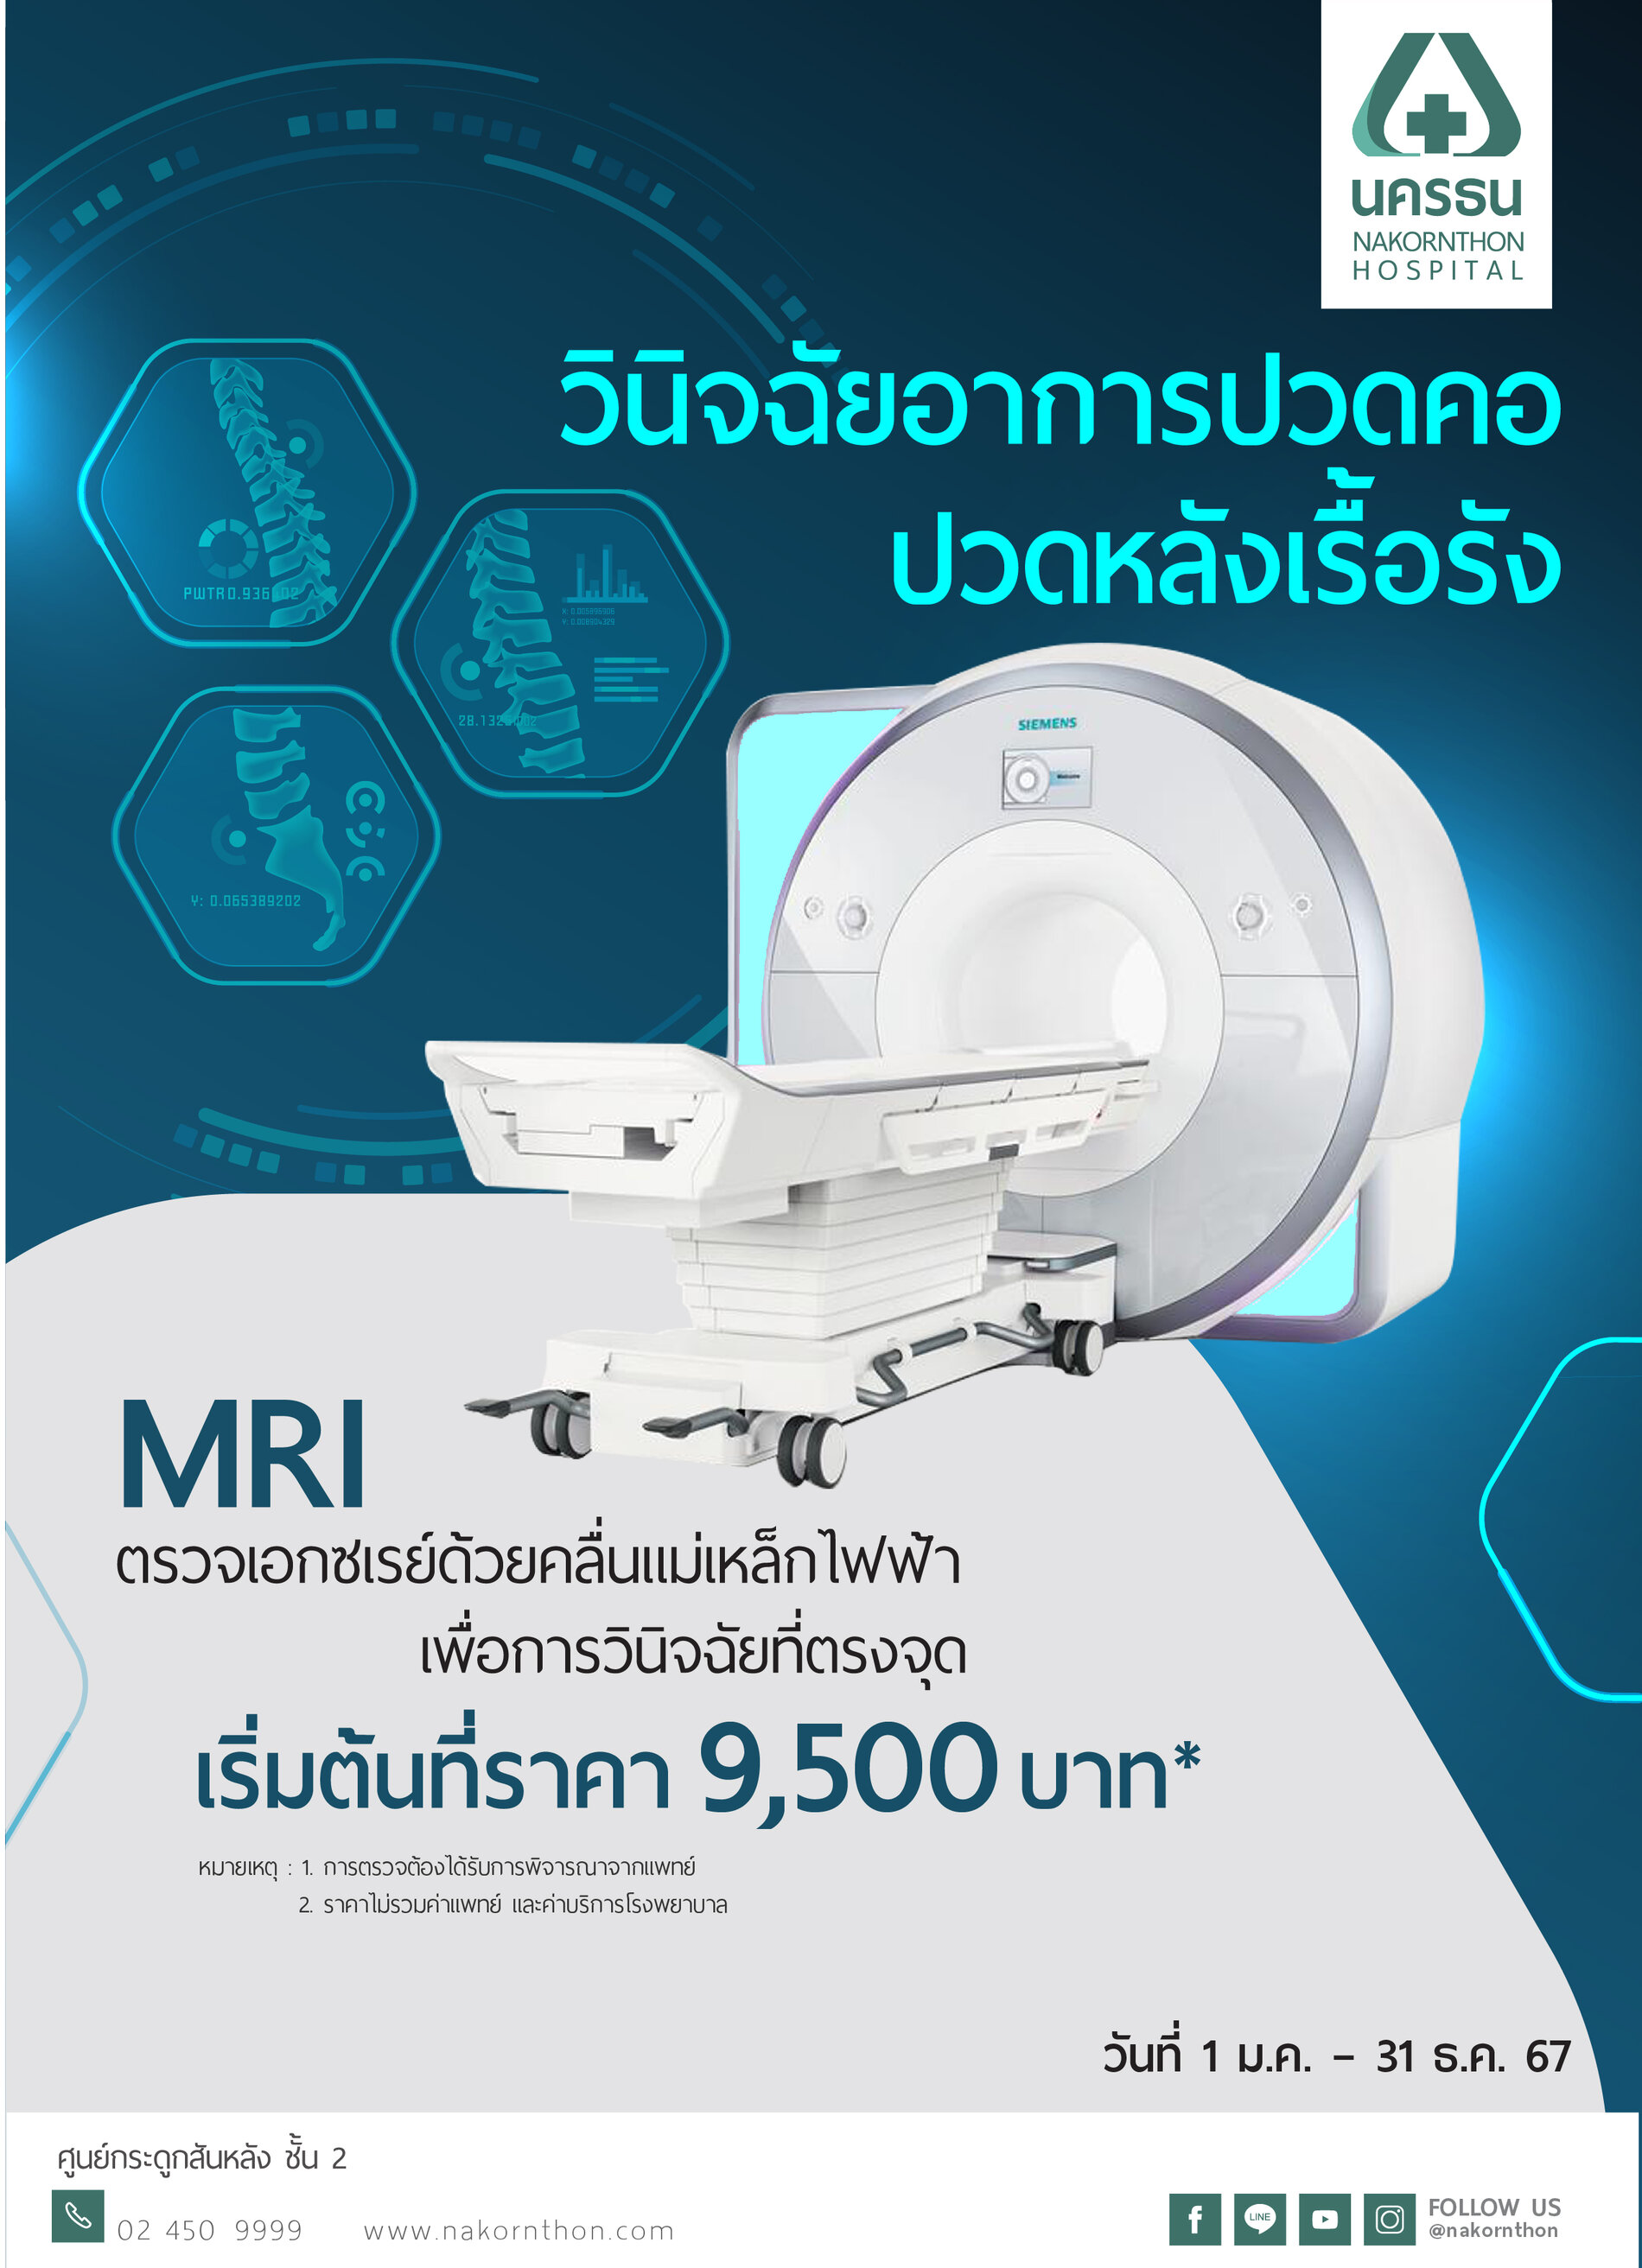 วินิจฉัยอาการปวดหลังเรื้อรัง ด้วยการเอกซเรย์คลื่นแม่เหล็กไฟฟ้า MRI